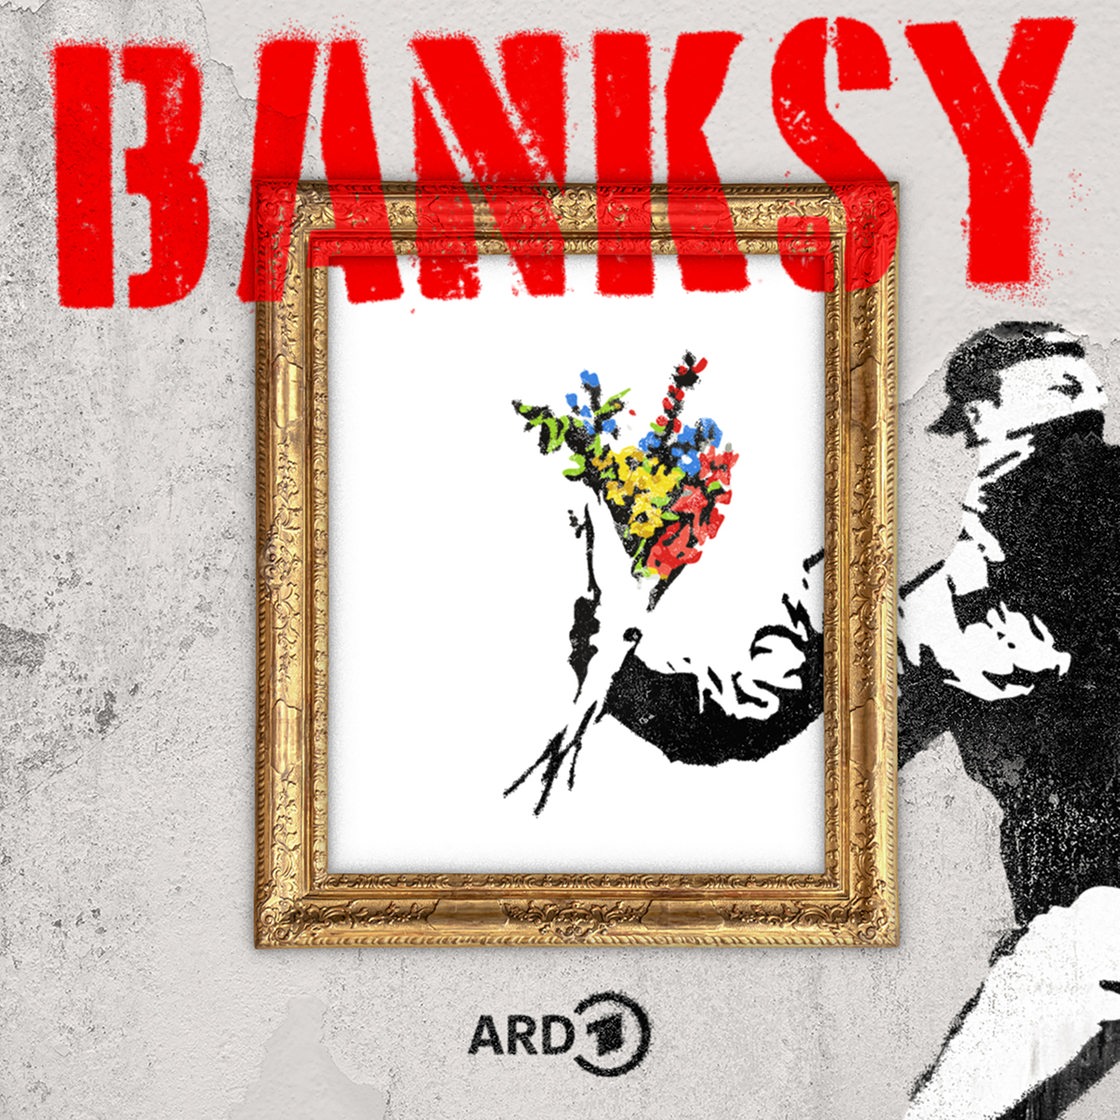 Podcast Bild ARD: Banksy - Rebellion oder Kitsch? 